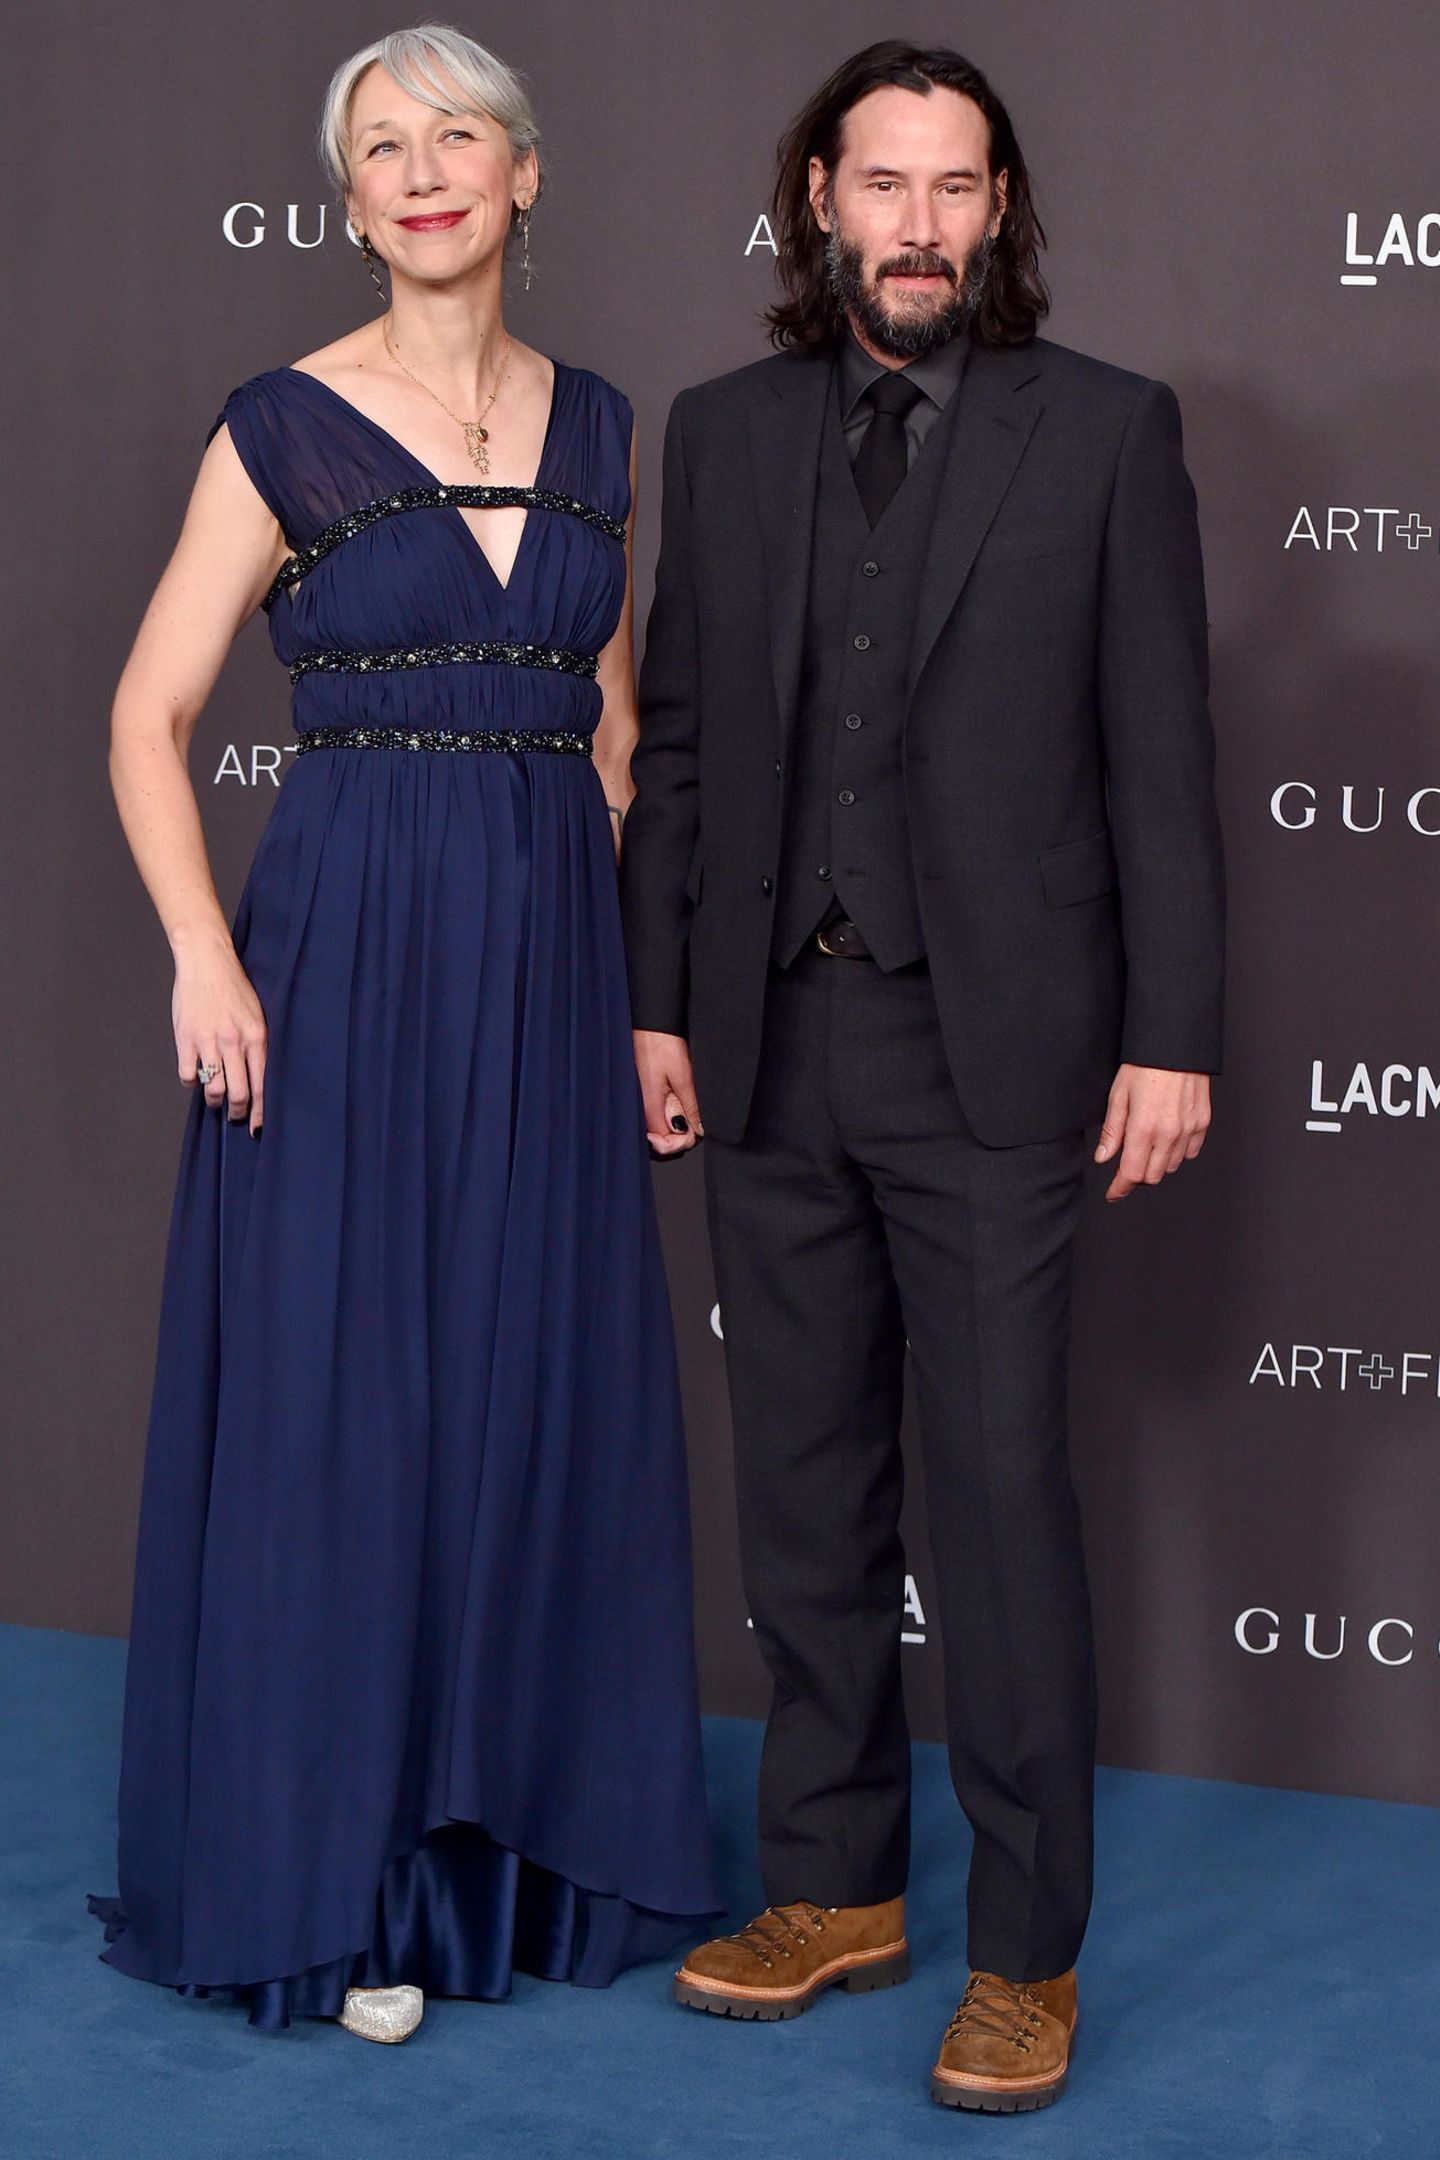 Bei der "LACMA Art + Film Gala" in Los Angeles präsentiert sich Keanu Reeves mit seiner Freundin auf dem roten Teppich. Und viele staunen nicht schlecht über die Begleitung des Schauspielers. Denn hier handelt es sich schließlich um die Oscar-Preisträgerin Helen Mirren. Oder doch nicht?